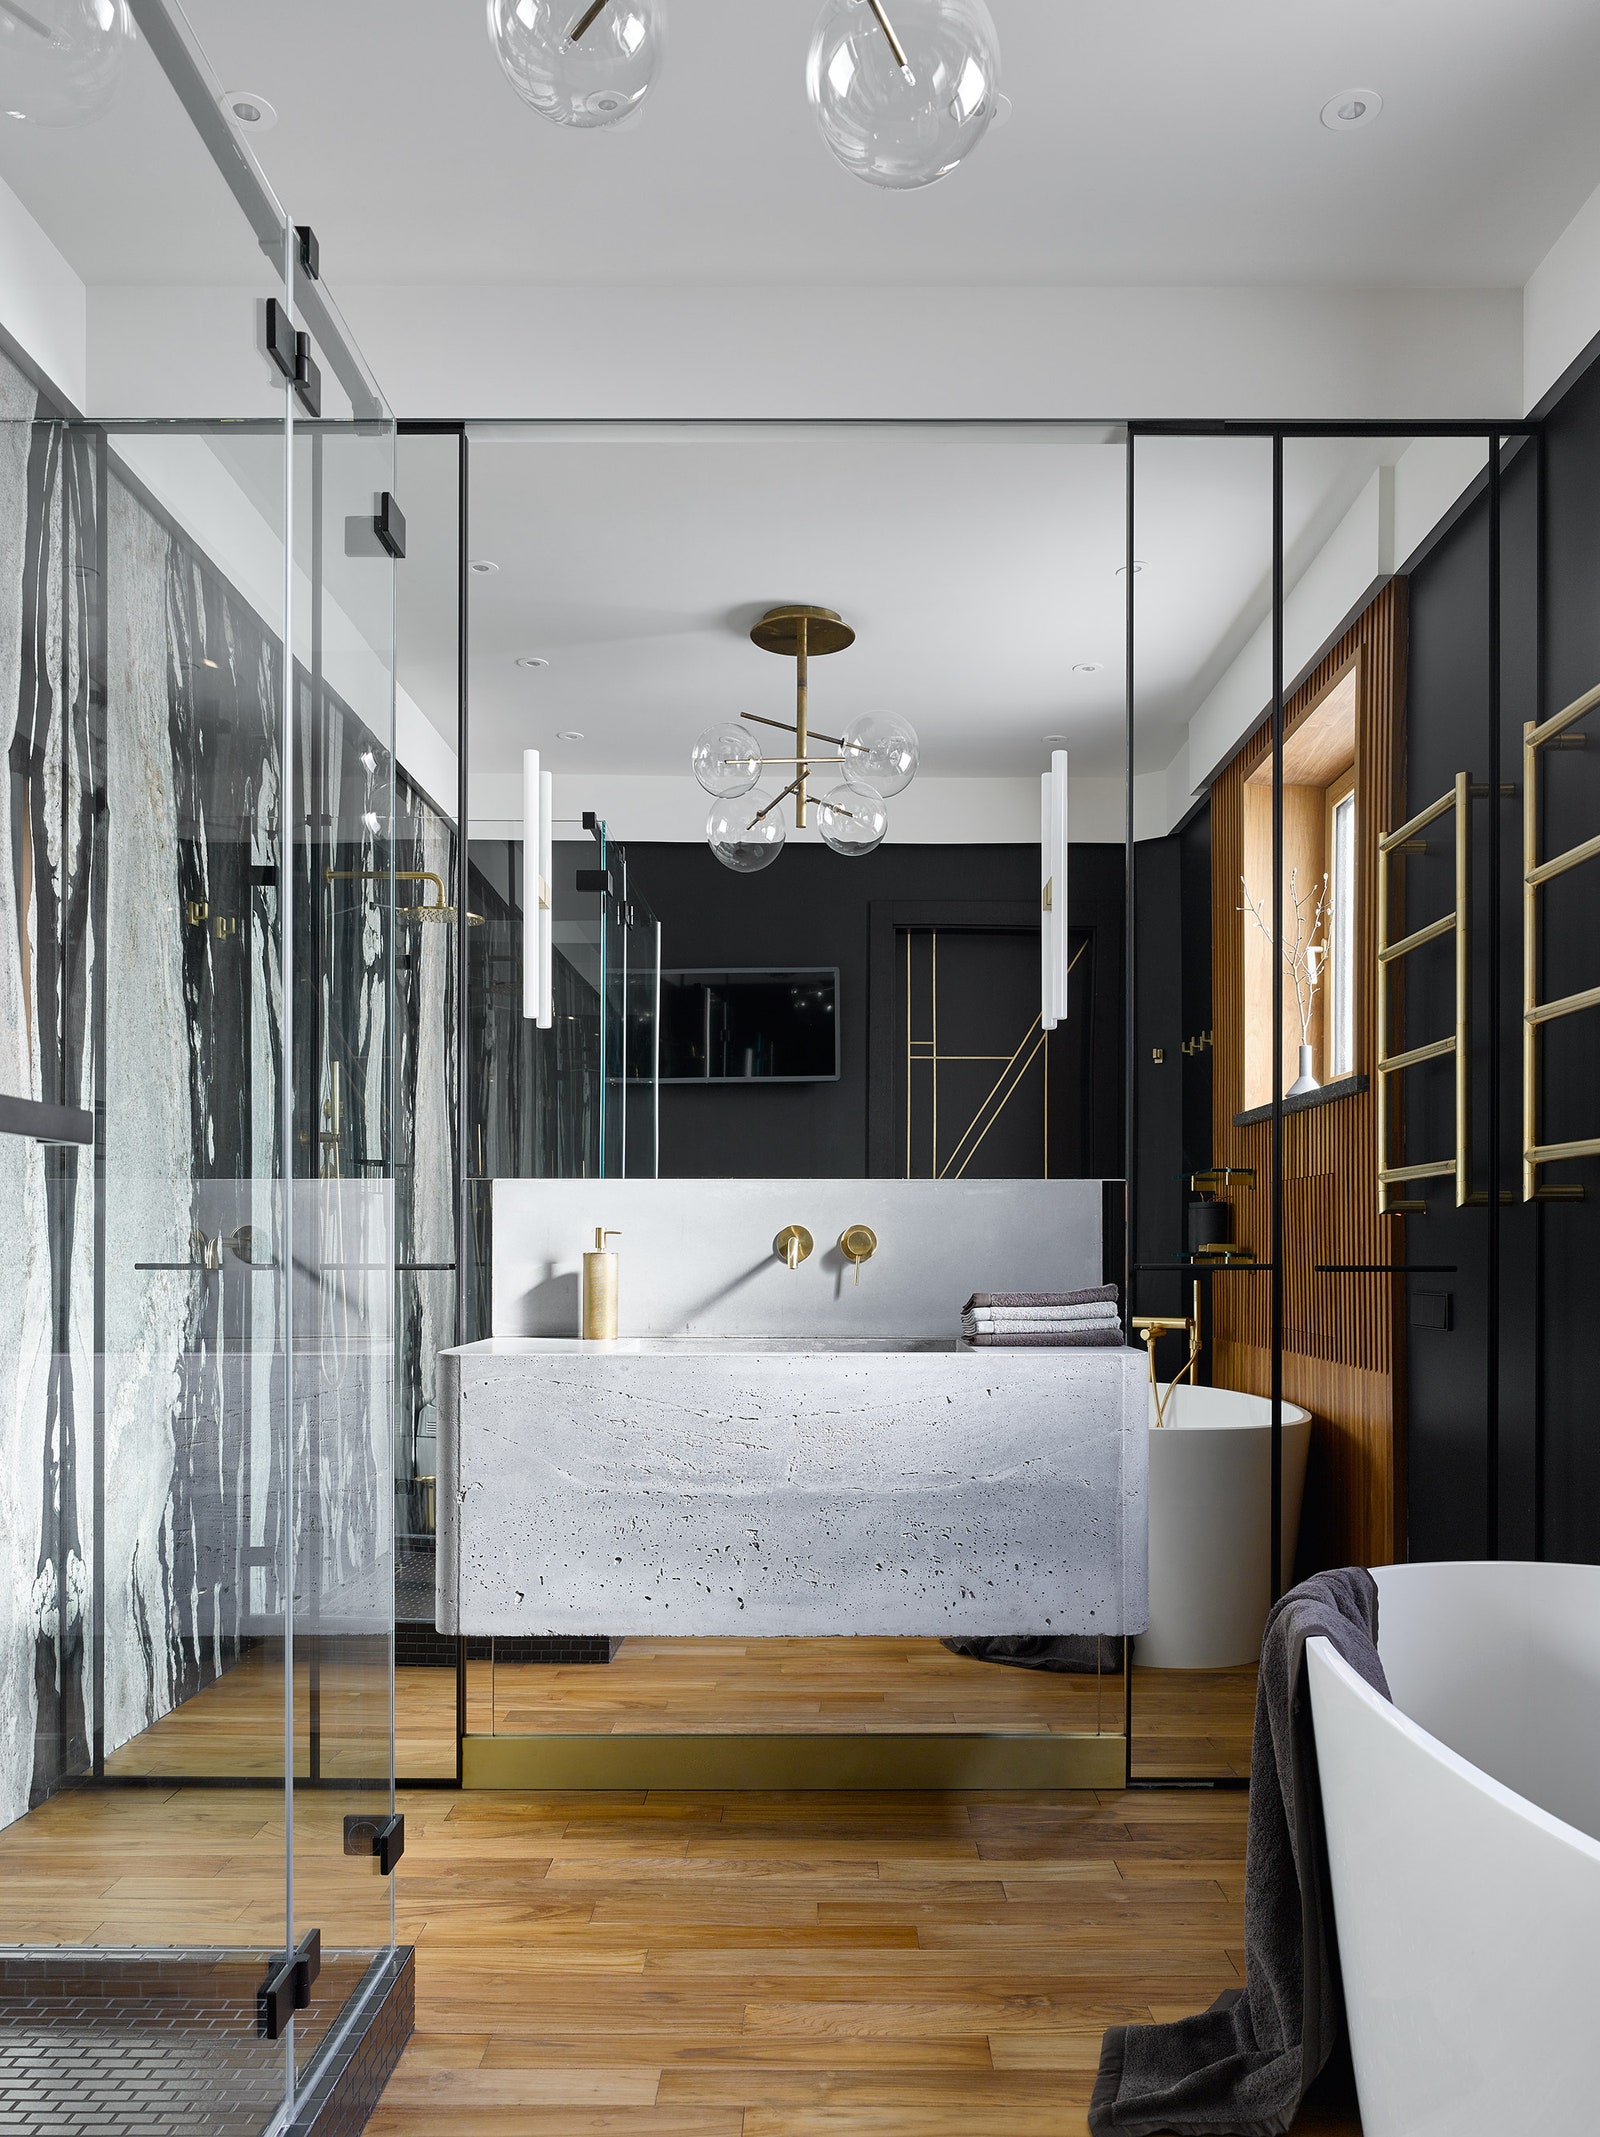 Ванная комната. Зеркальные встроенные шкафы сделаны по эскизам дизайнера “Империалист”. Раковина из бетона по эскизам...